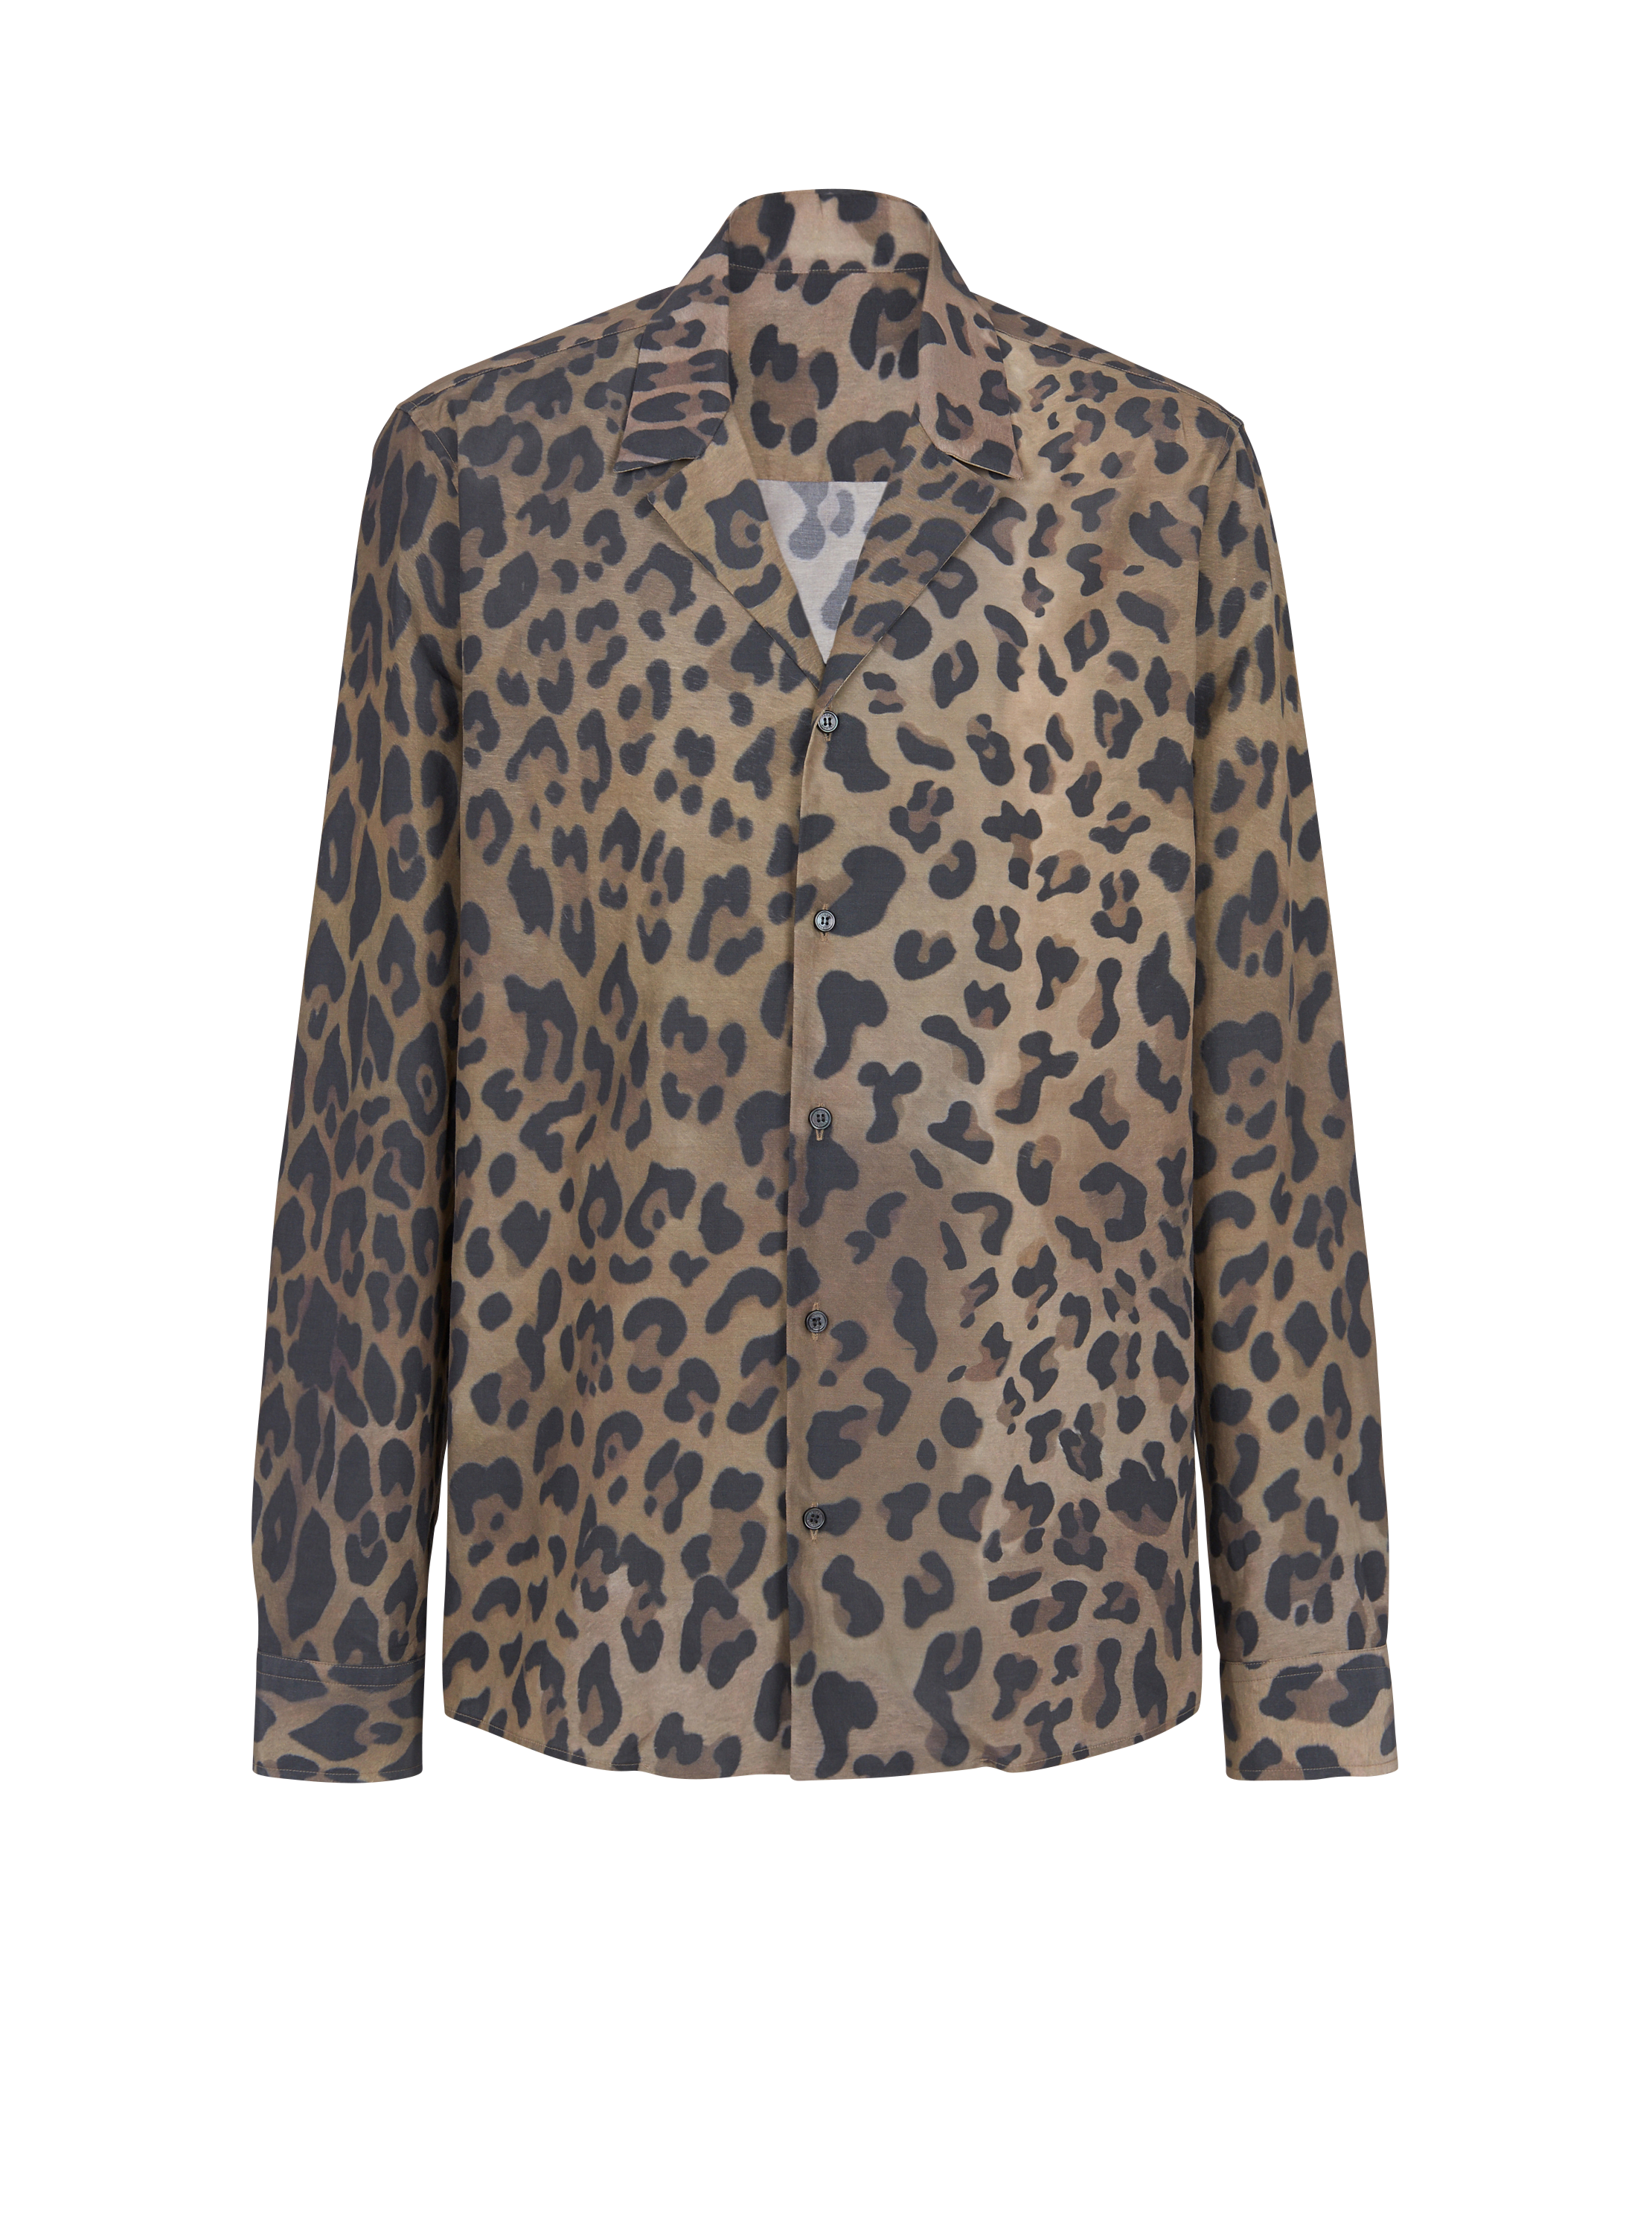 Camisa pijamera con estampado de leopardo